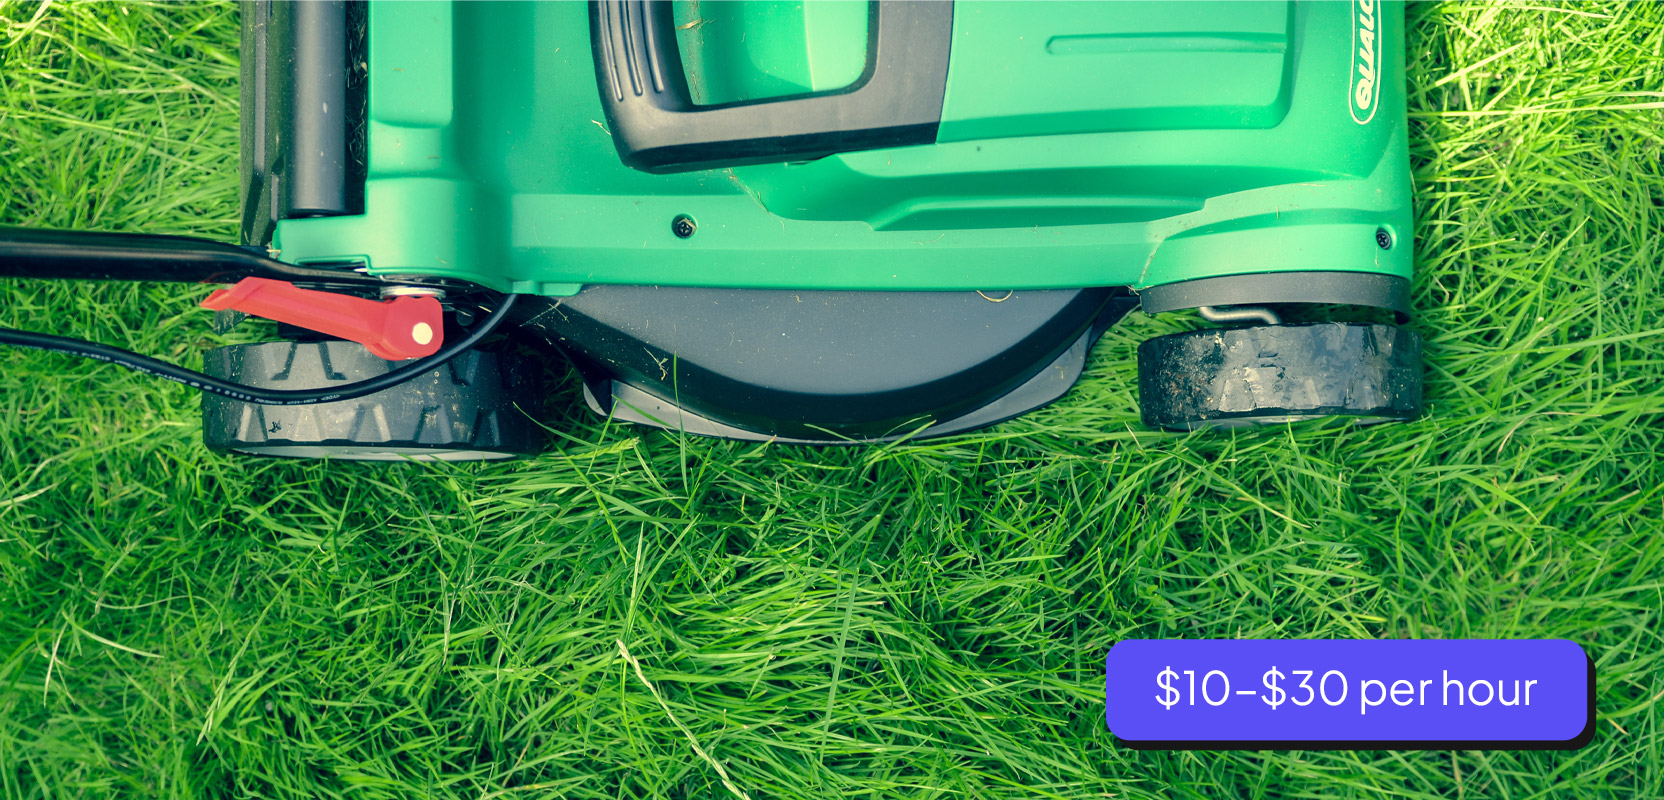 Lawnmower sitting on a grassy lawn